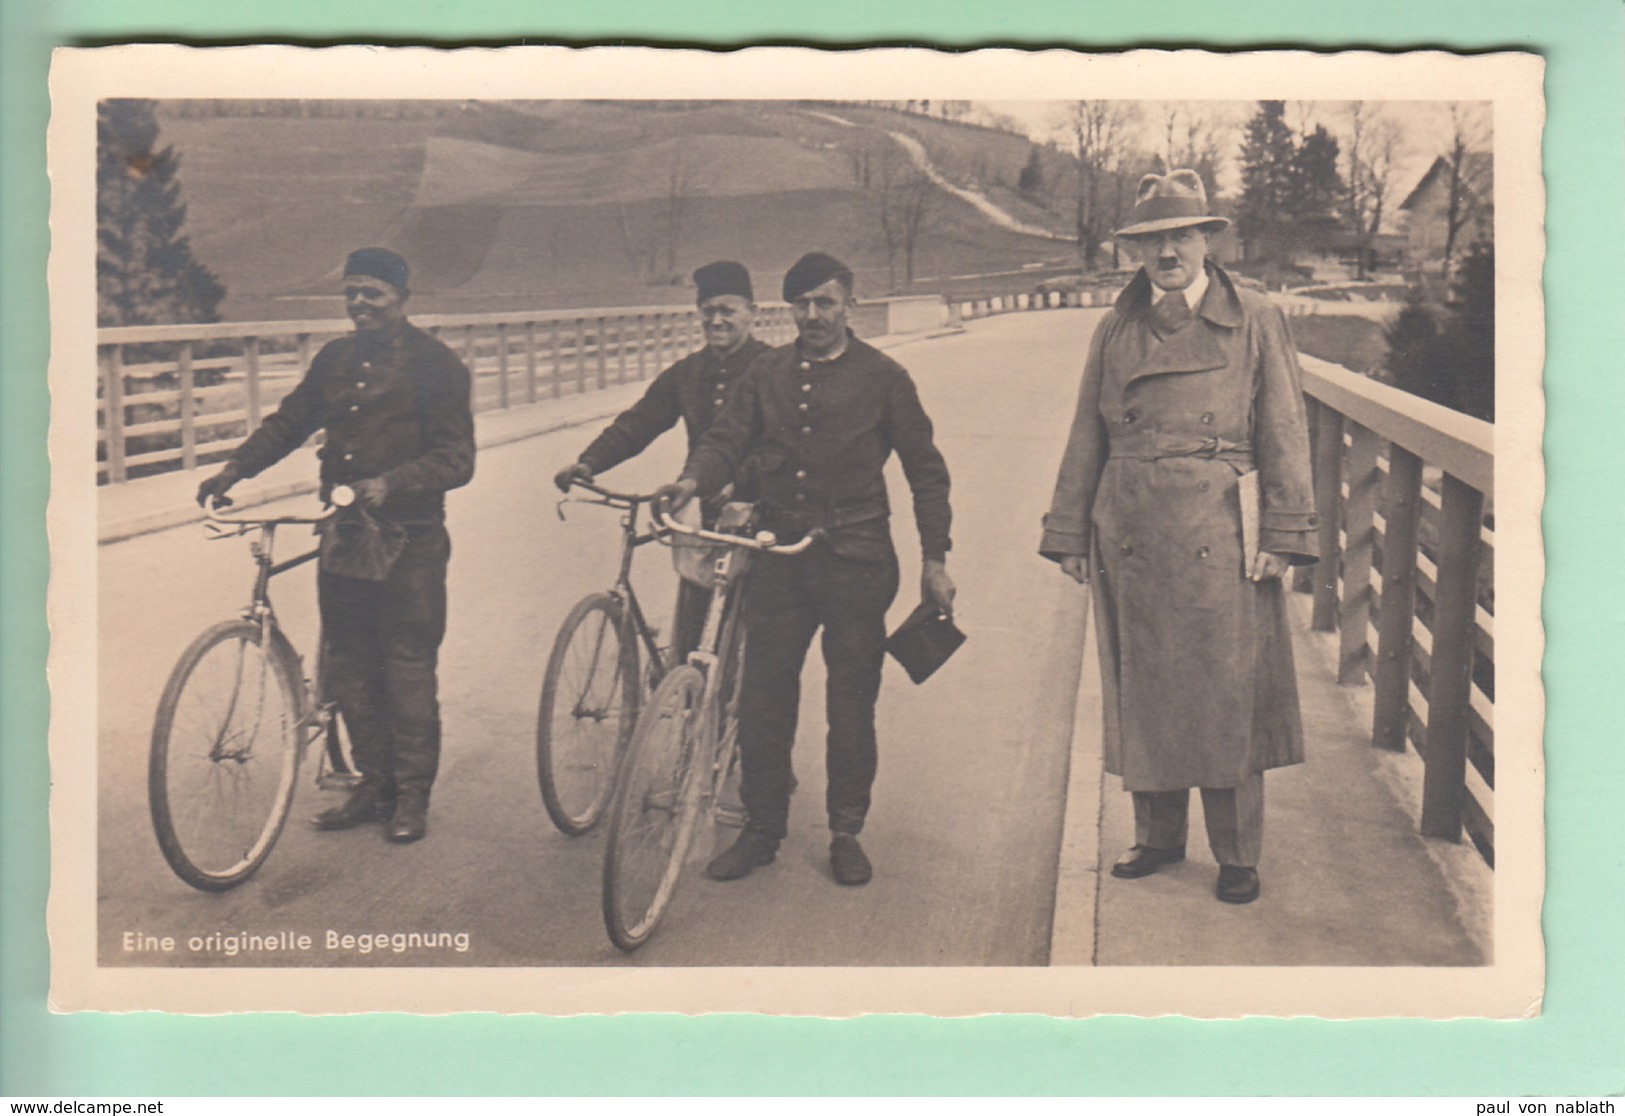 Adolf Hitler In Zivil + Drei Schornsteinfeger + Fahrrad # Fahrräder # Stempel Ammer-Hochbrücke # Photo-Hoffmann - Lettres & Documents